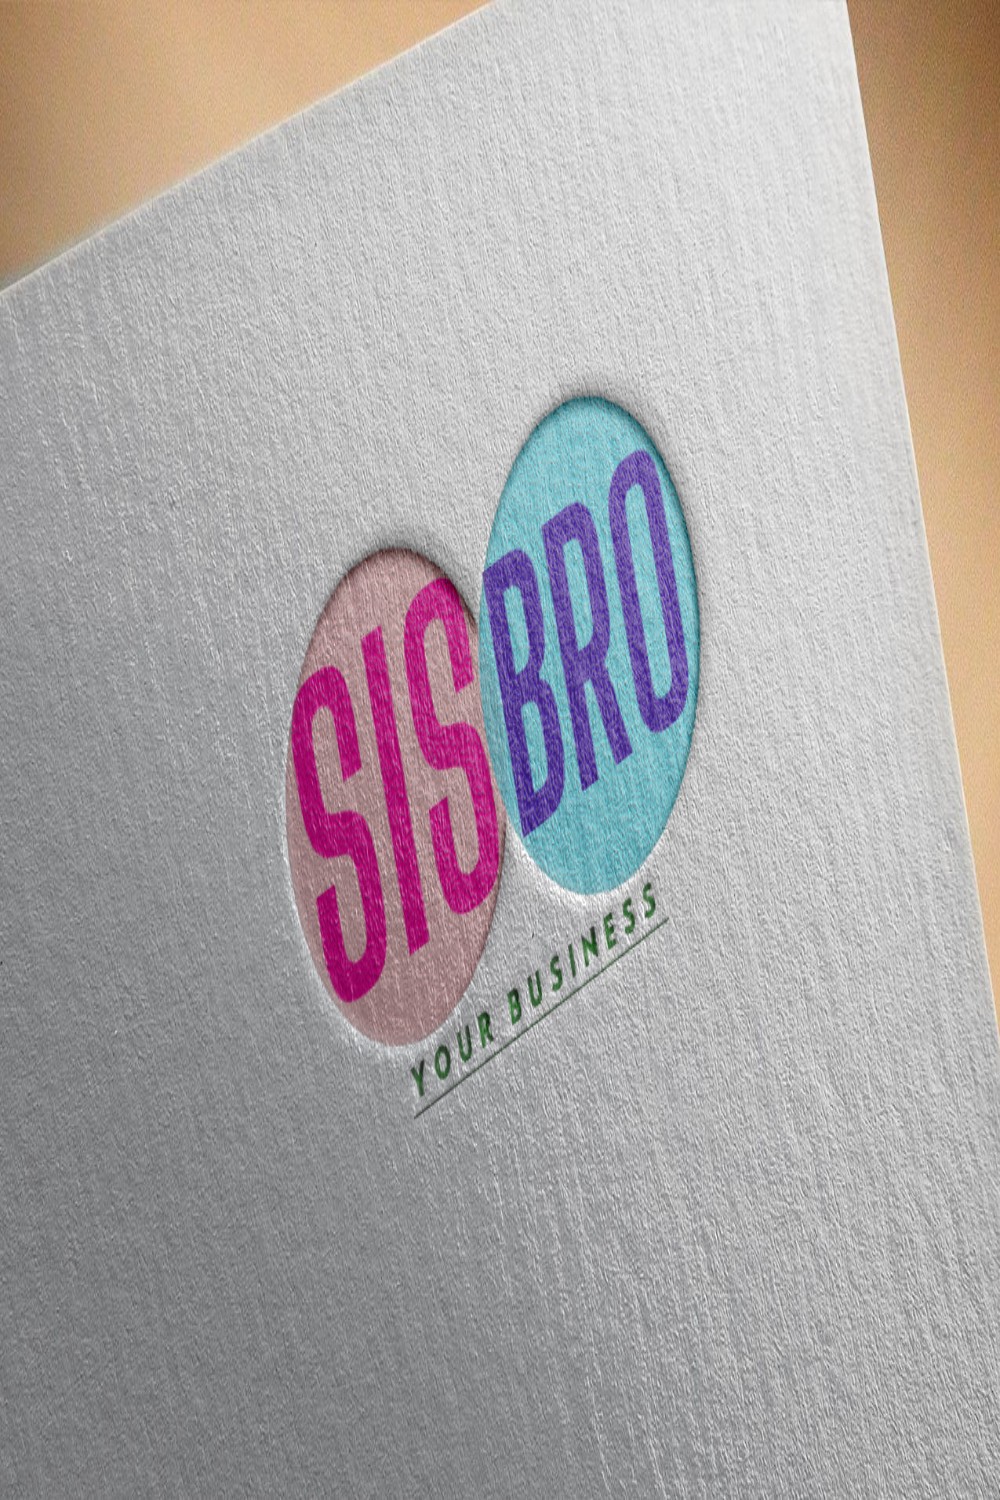 Sis Bro Logo Design Pinterest collage image.